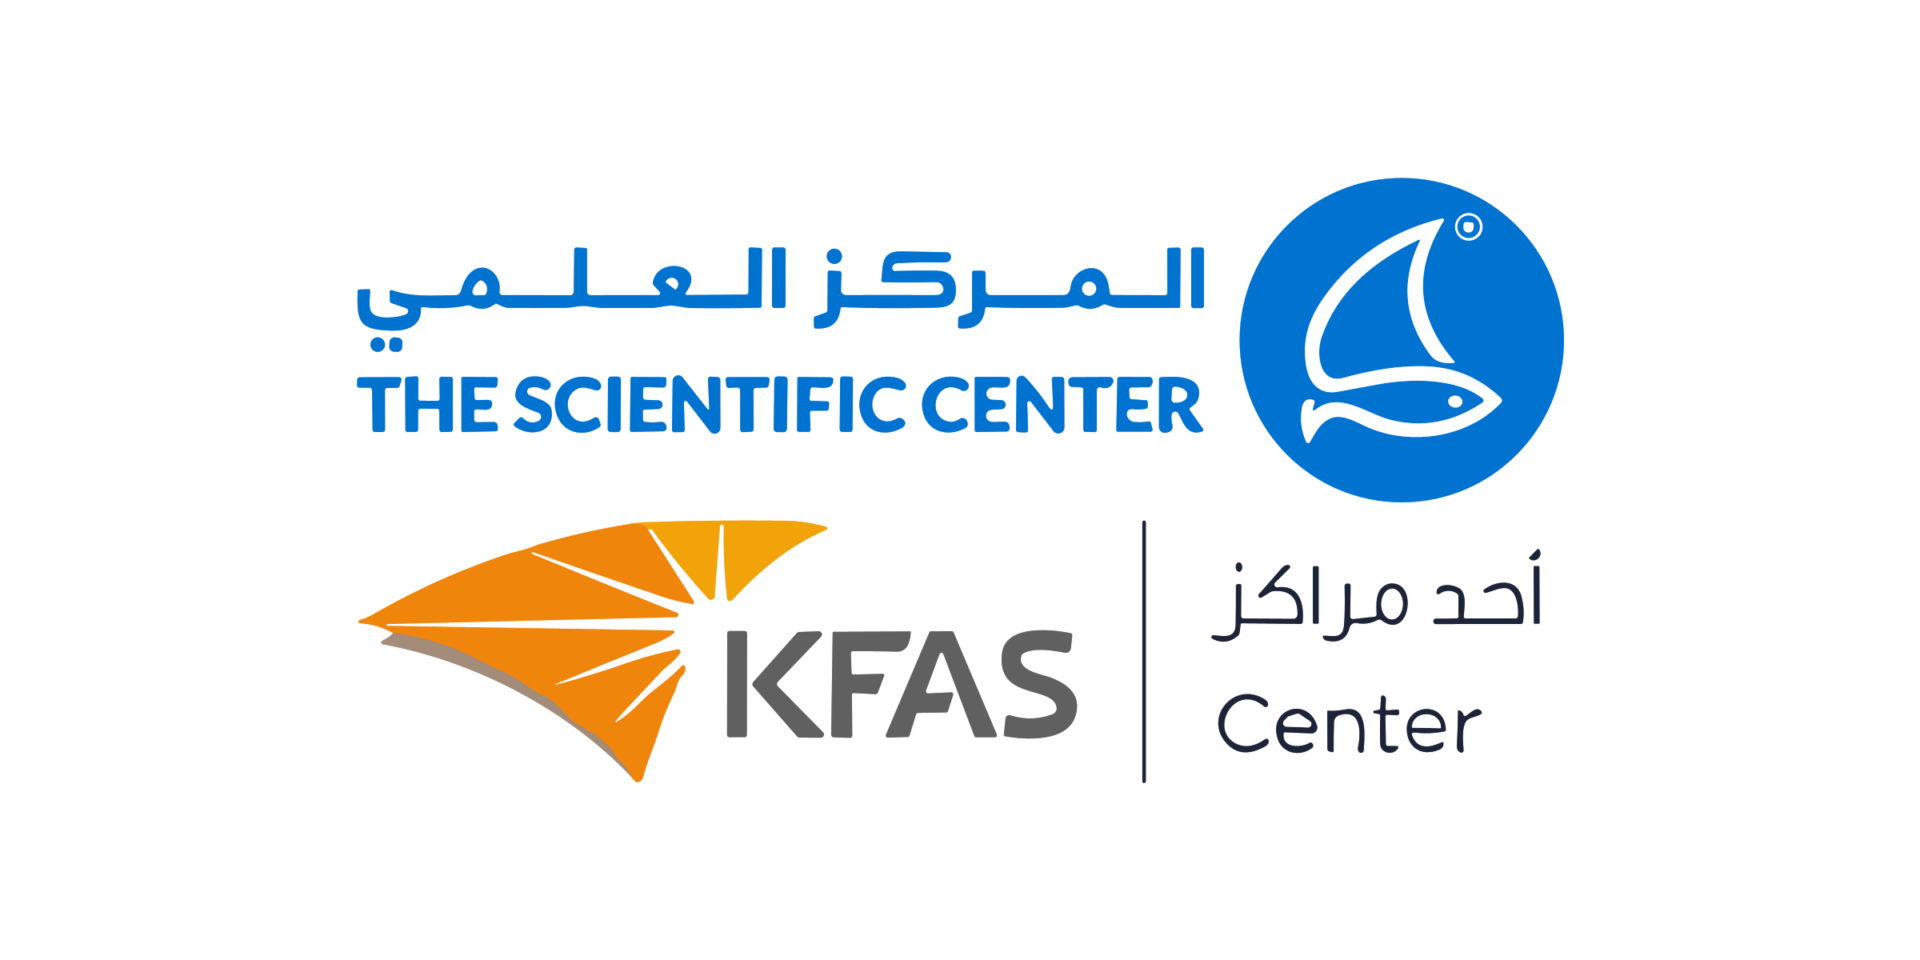 The Scientific Center of Kuwait Logo